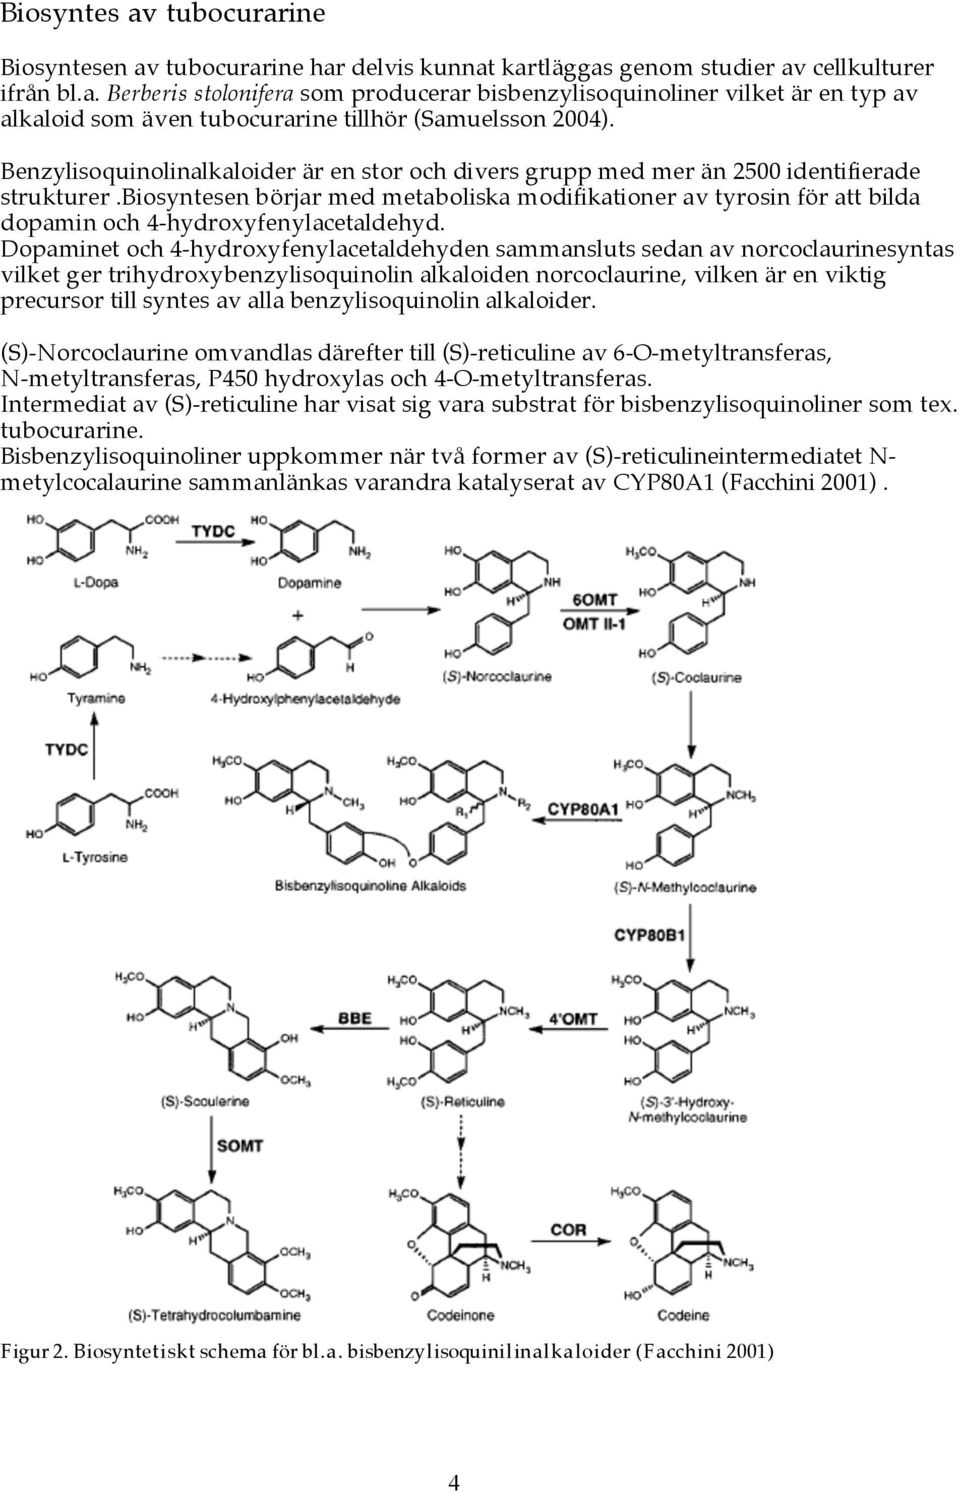 biosyntesen börjar med metaboliska modifikationer av tyrosin för att bilda dopamin och 4-hydroxyfenylacetaldehyd.